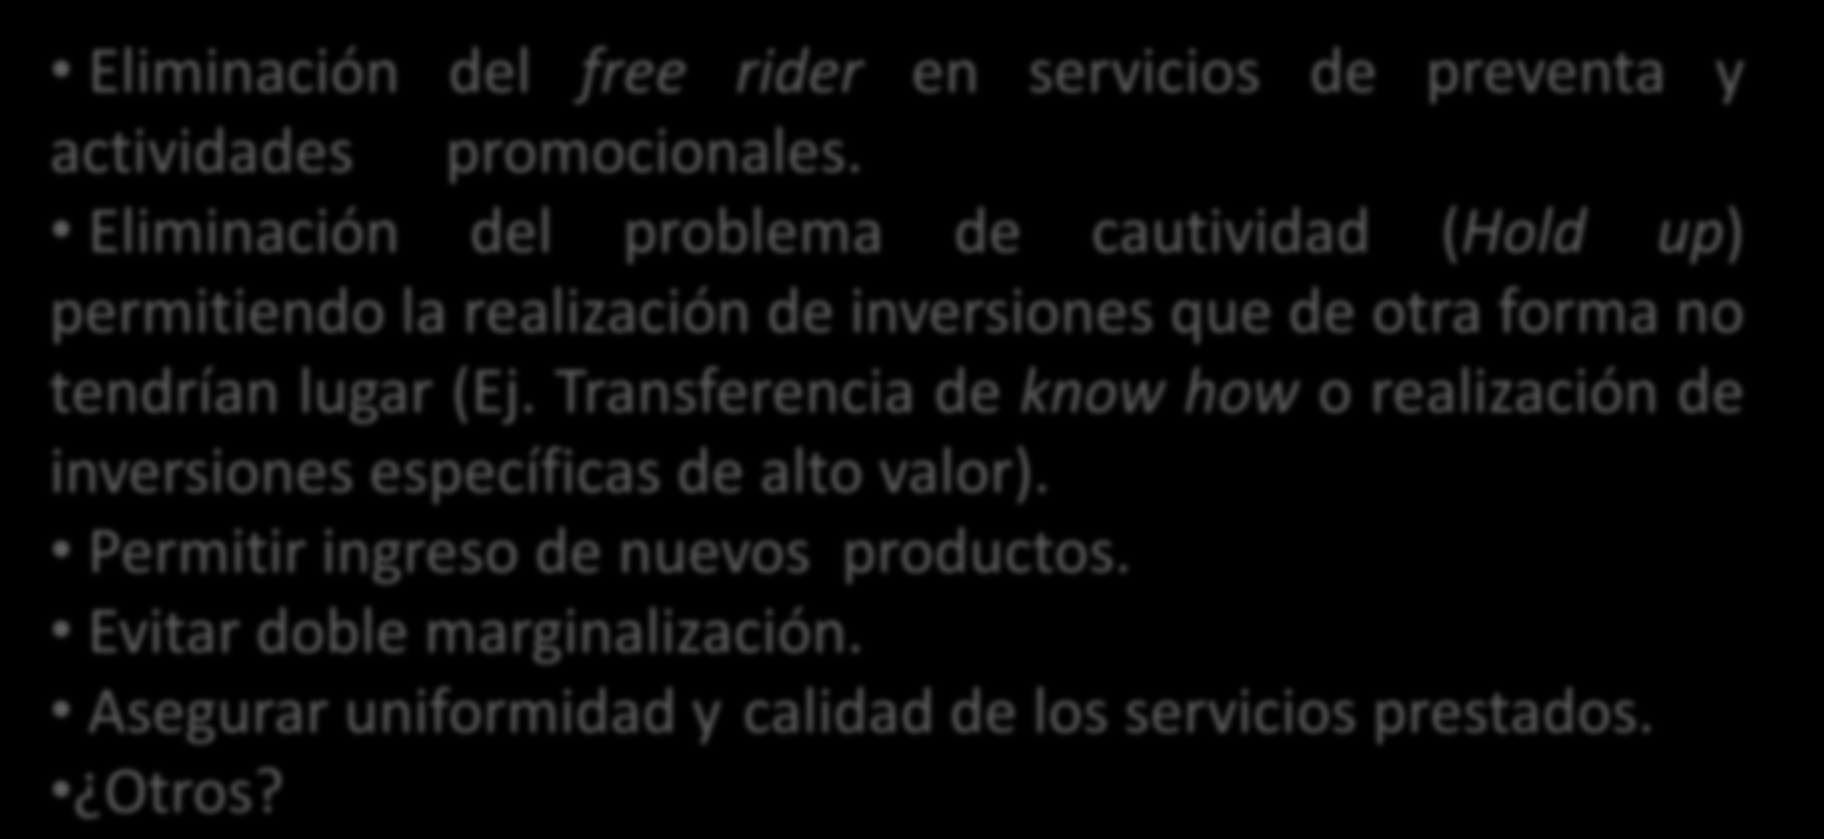 2. Existen eficiencias asociadas a dicho sistema de distribución? Eliminación del free rider en servicios de preventa y actividades promocionales.